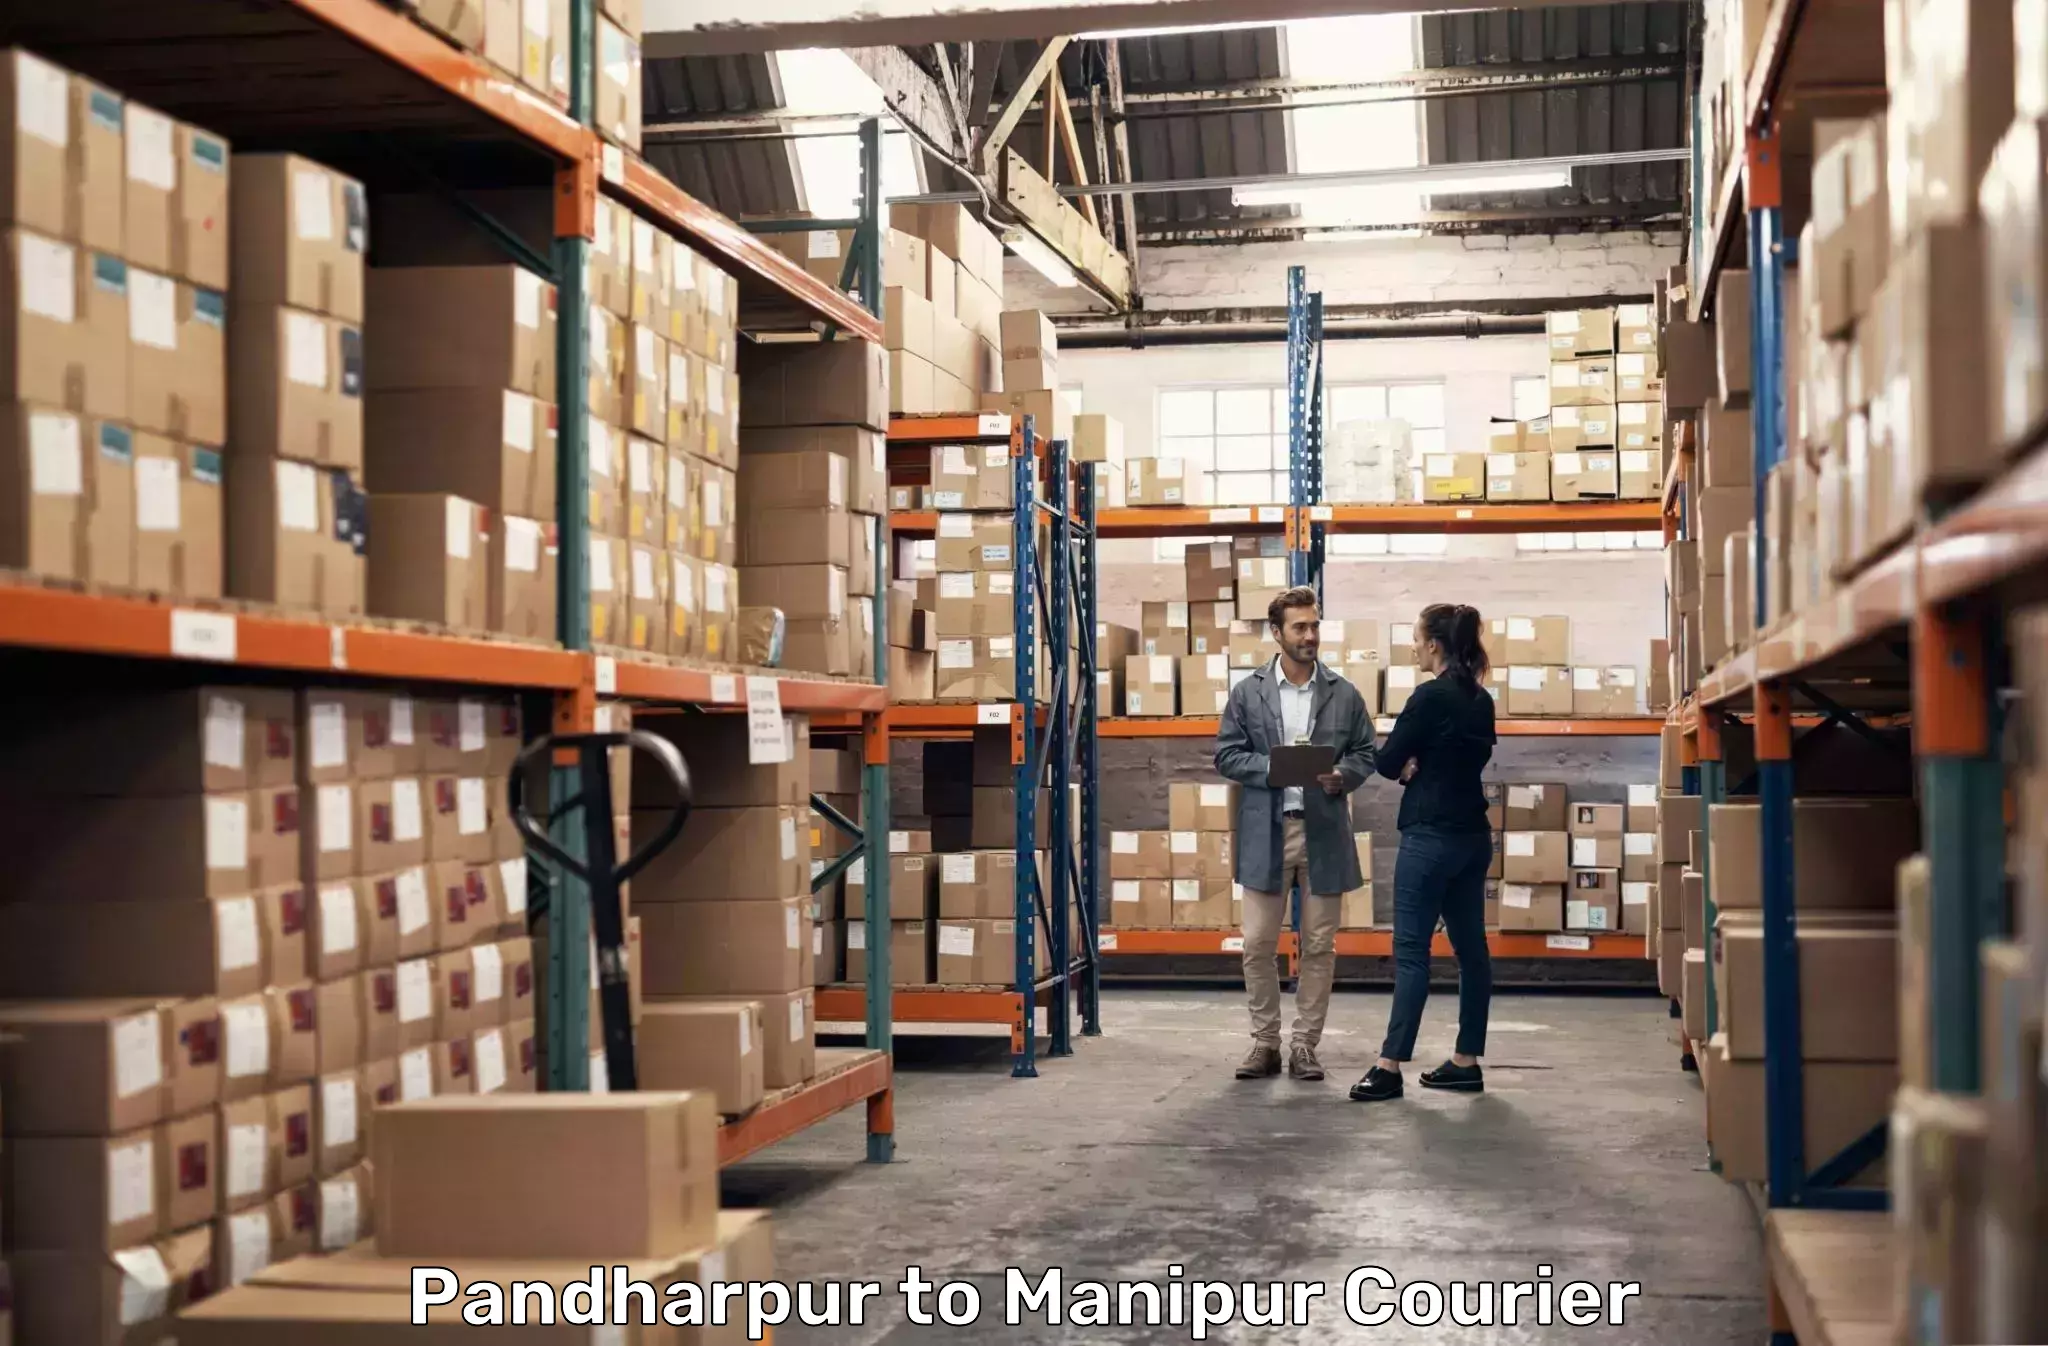 Next-generation courier services Pandharpur to Churachandpur